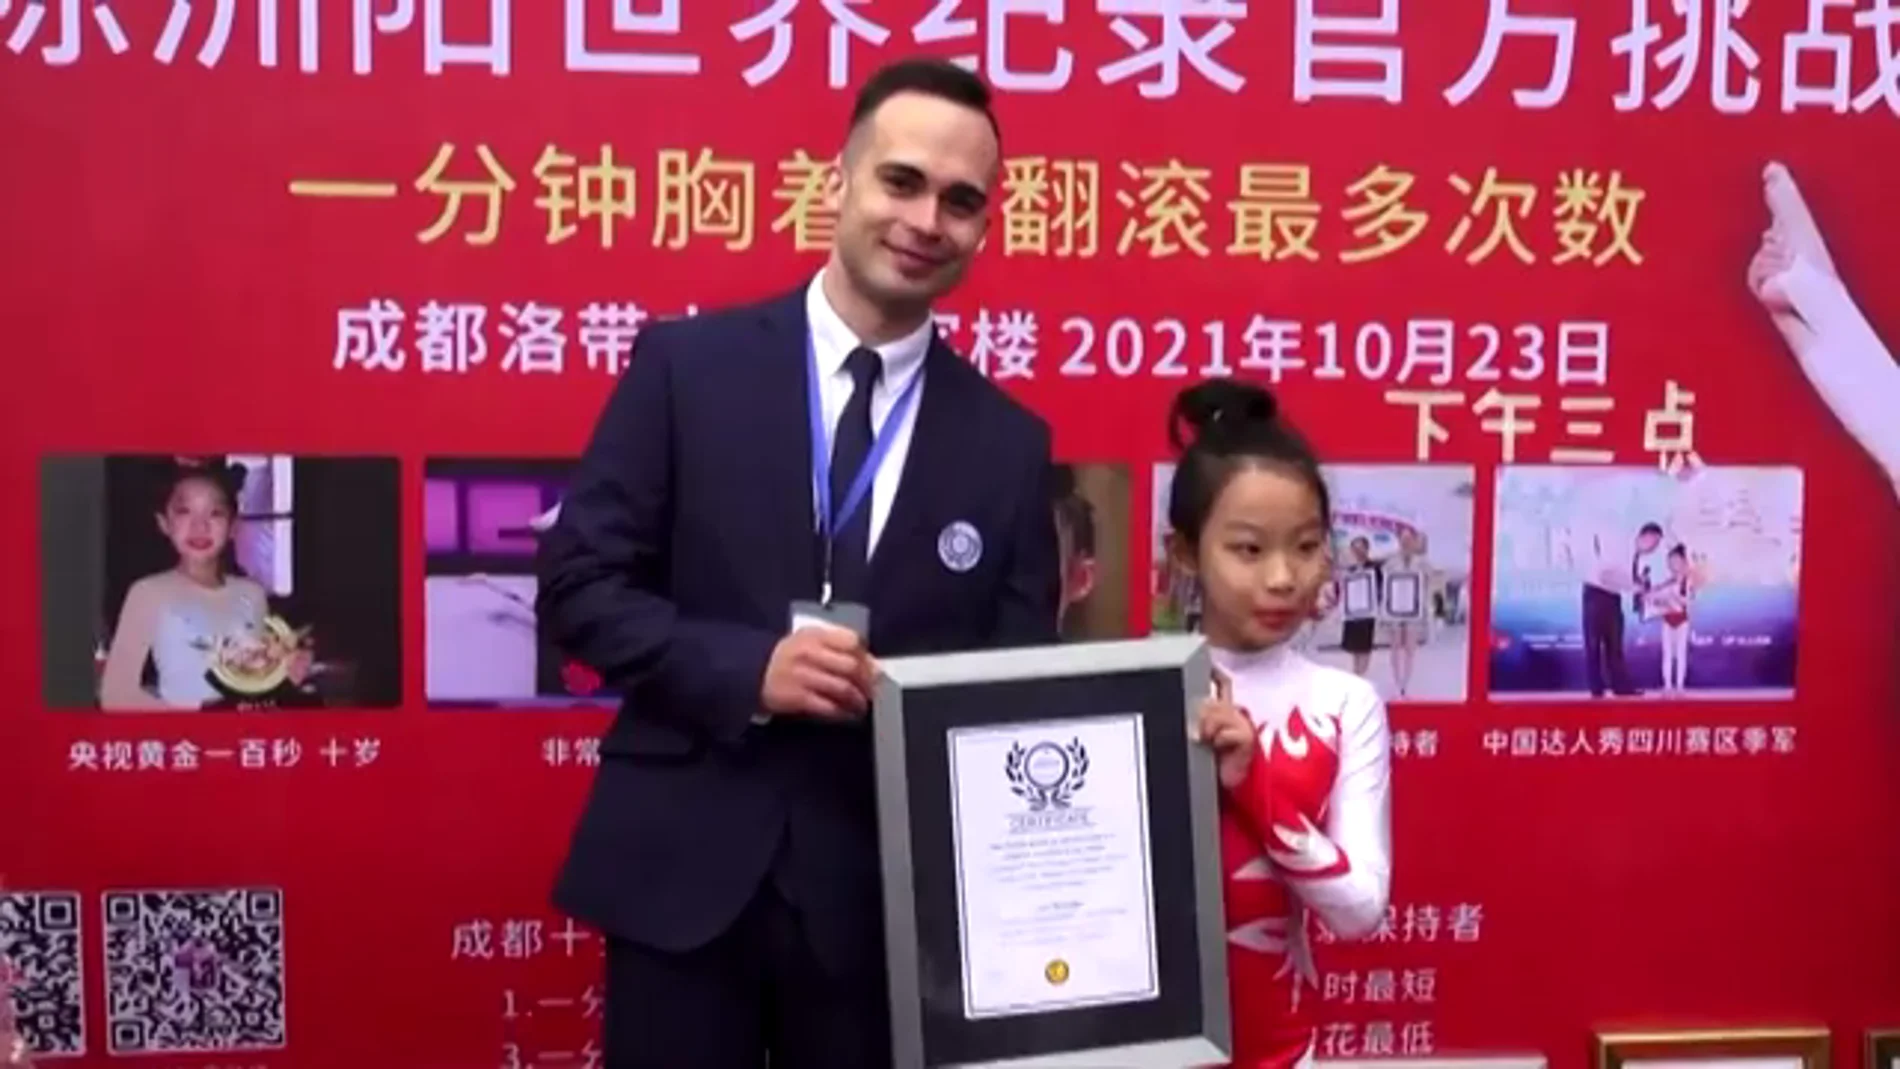 Chen Zhouyang bate tres récords mundiales de Jiu-jitsu con tan solo 10 años